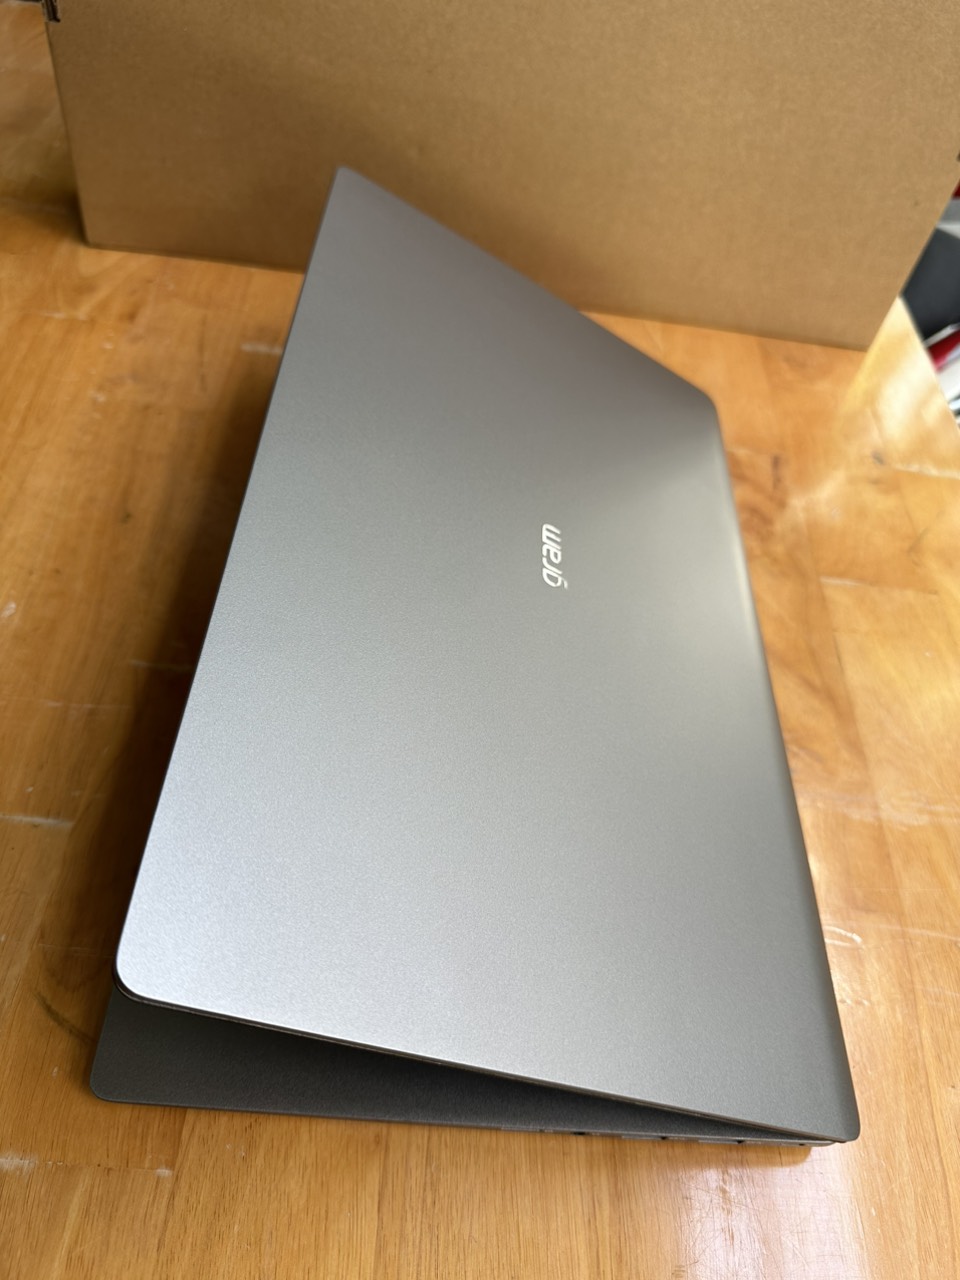 Laptop LG Gram 15Z95N, Core i5 – 1135G7, 16G, 512G, 15.6in, Full HD